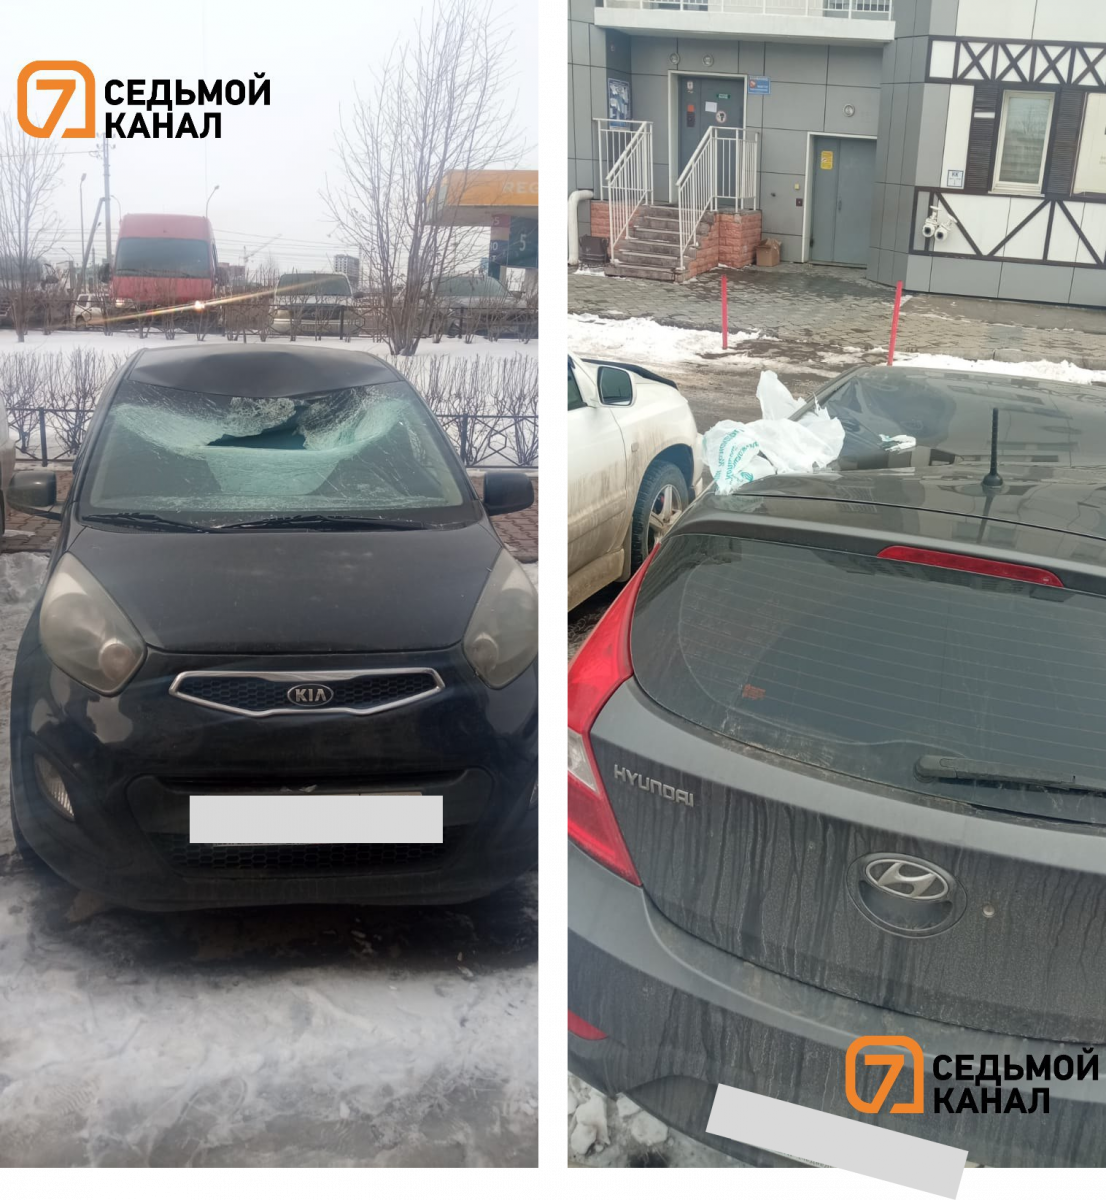 В Красноярске неизвестный скинул пакеты с водой на припаркованные автомобили из окна 25-этажного дома